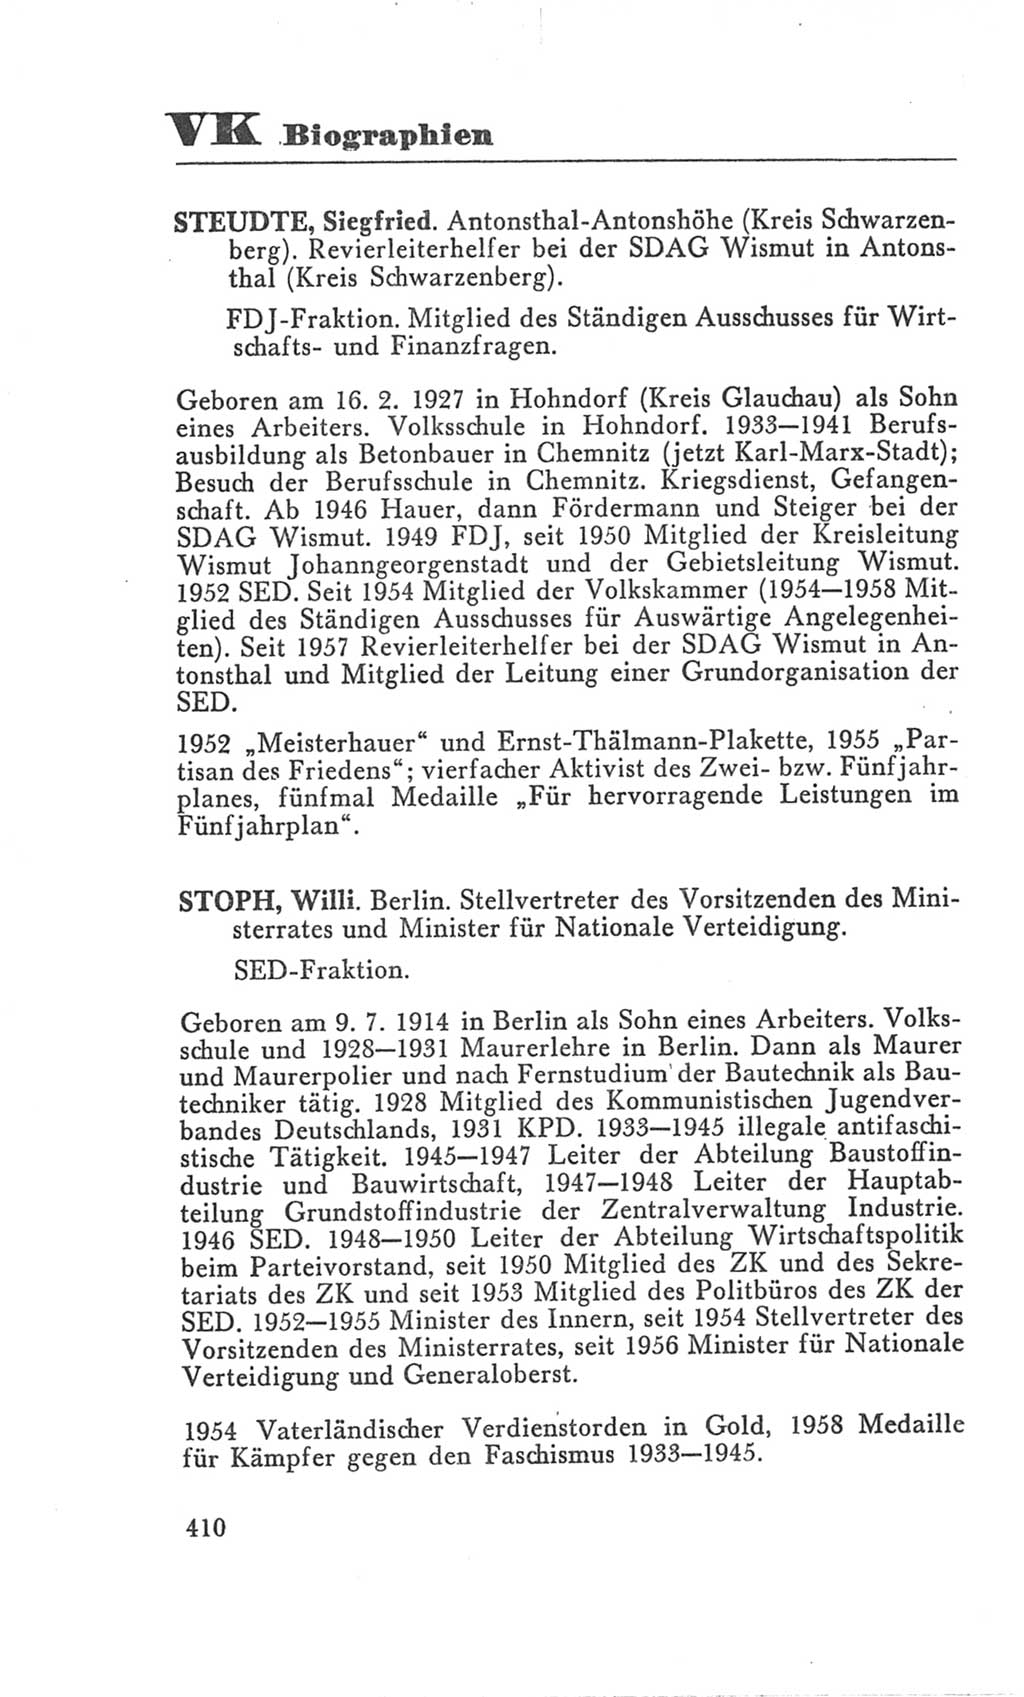 Handbuch der Volkskammer (VK) der Deutschen Demokratischen Republik (DDR), 3. Wahlperiode 1958-1963, Seite 410 (Hdb. VK. DDR 3. WP. 1958-1963, S. 410)